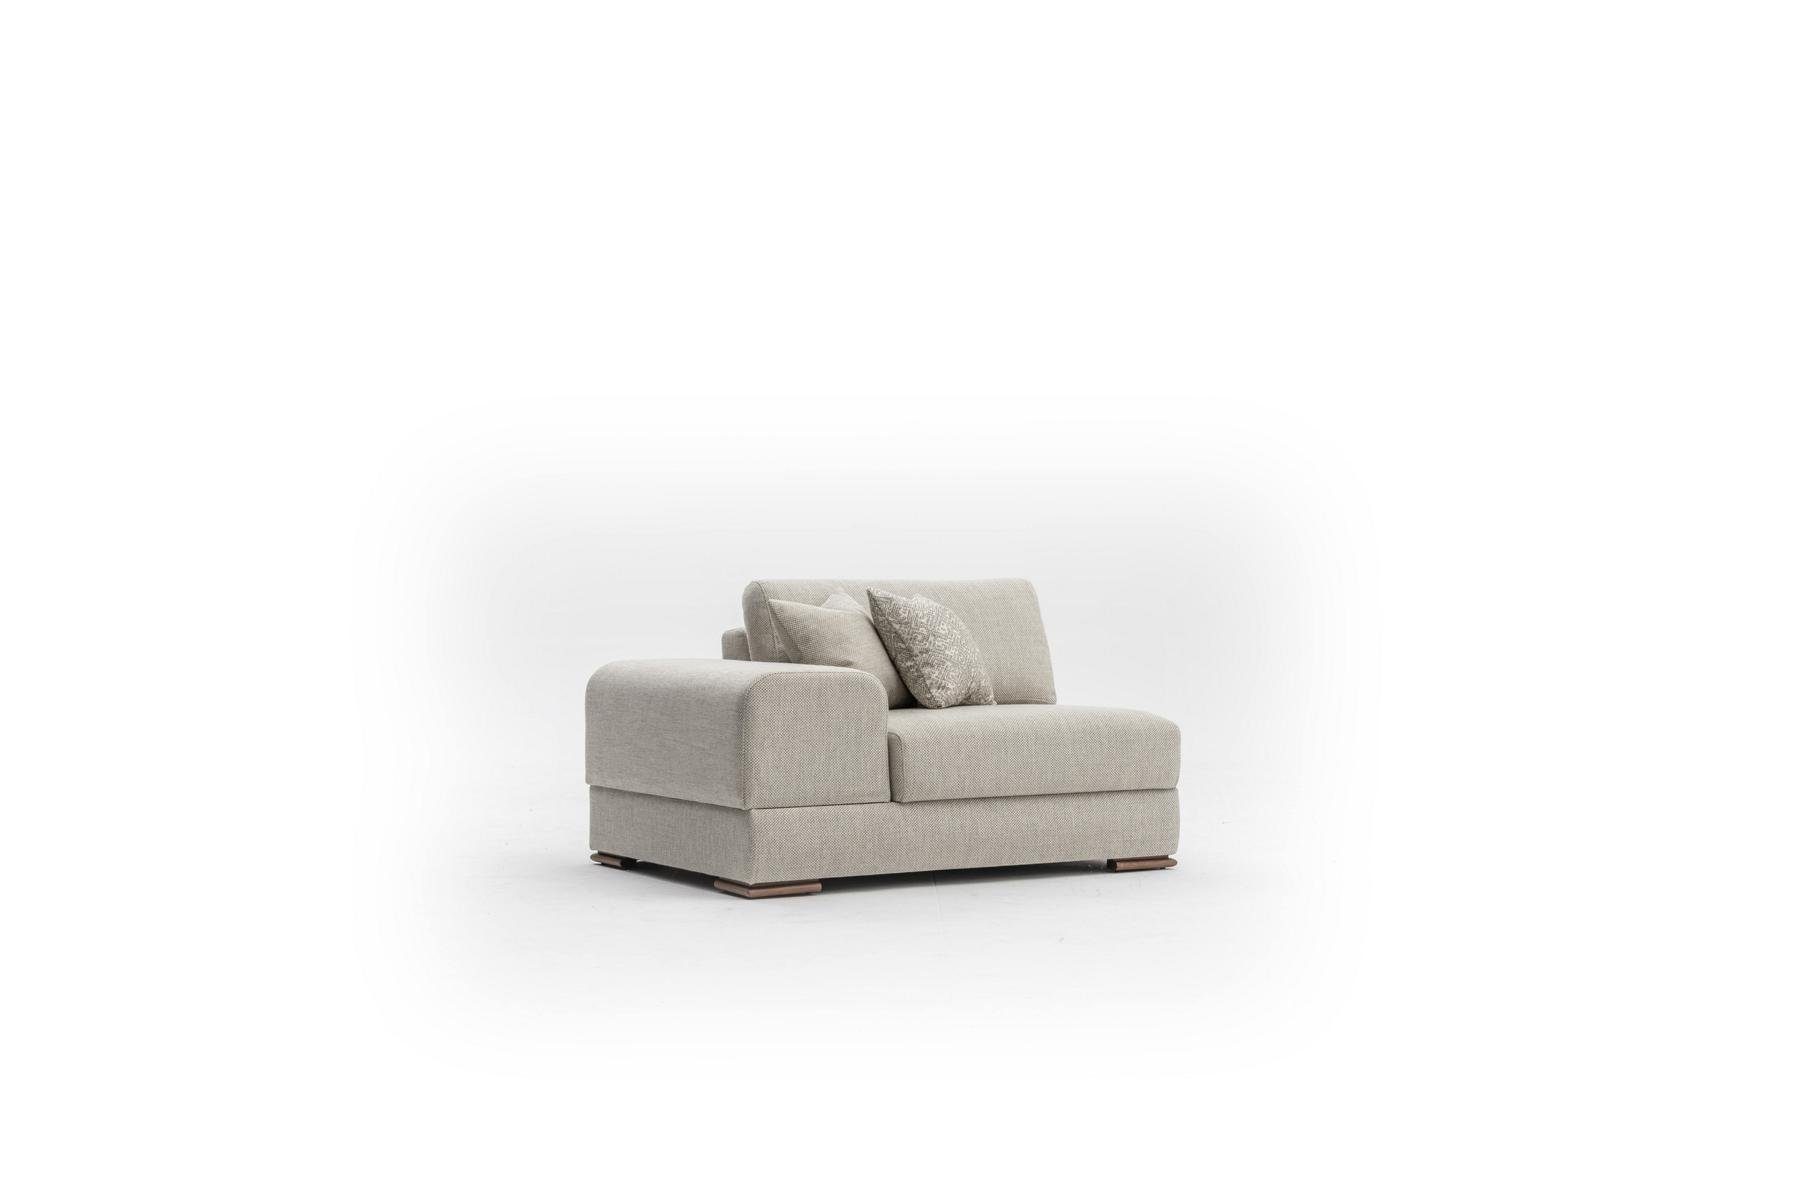 260cm in Design Made Neu, Sofa Wohnzimmer 3-Sitzer 3 Luxus Big JVmoebel Sitzer Europe Sofas